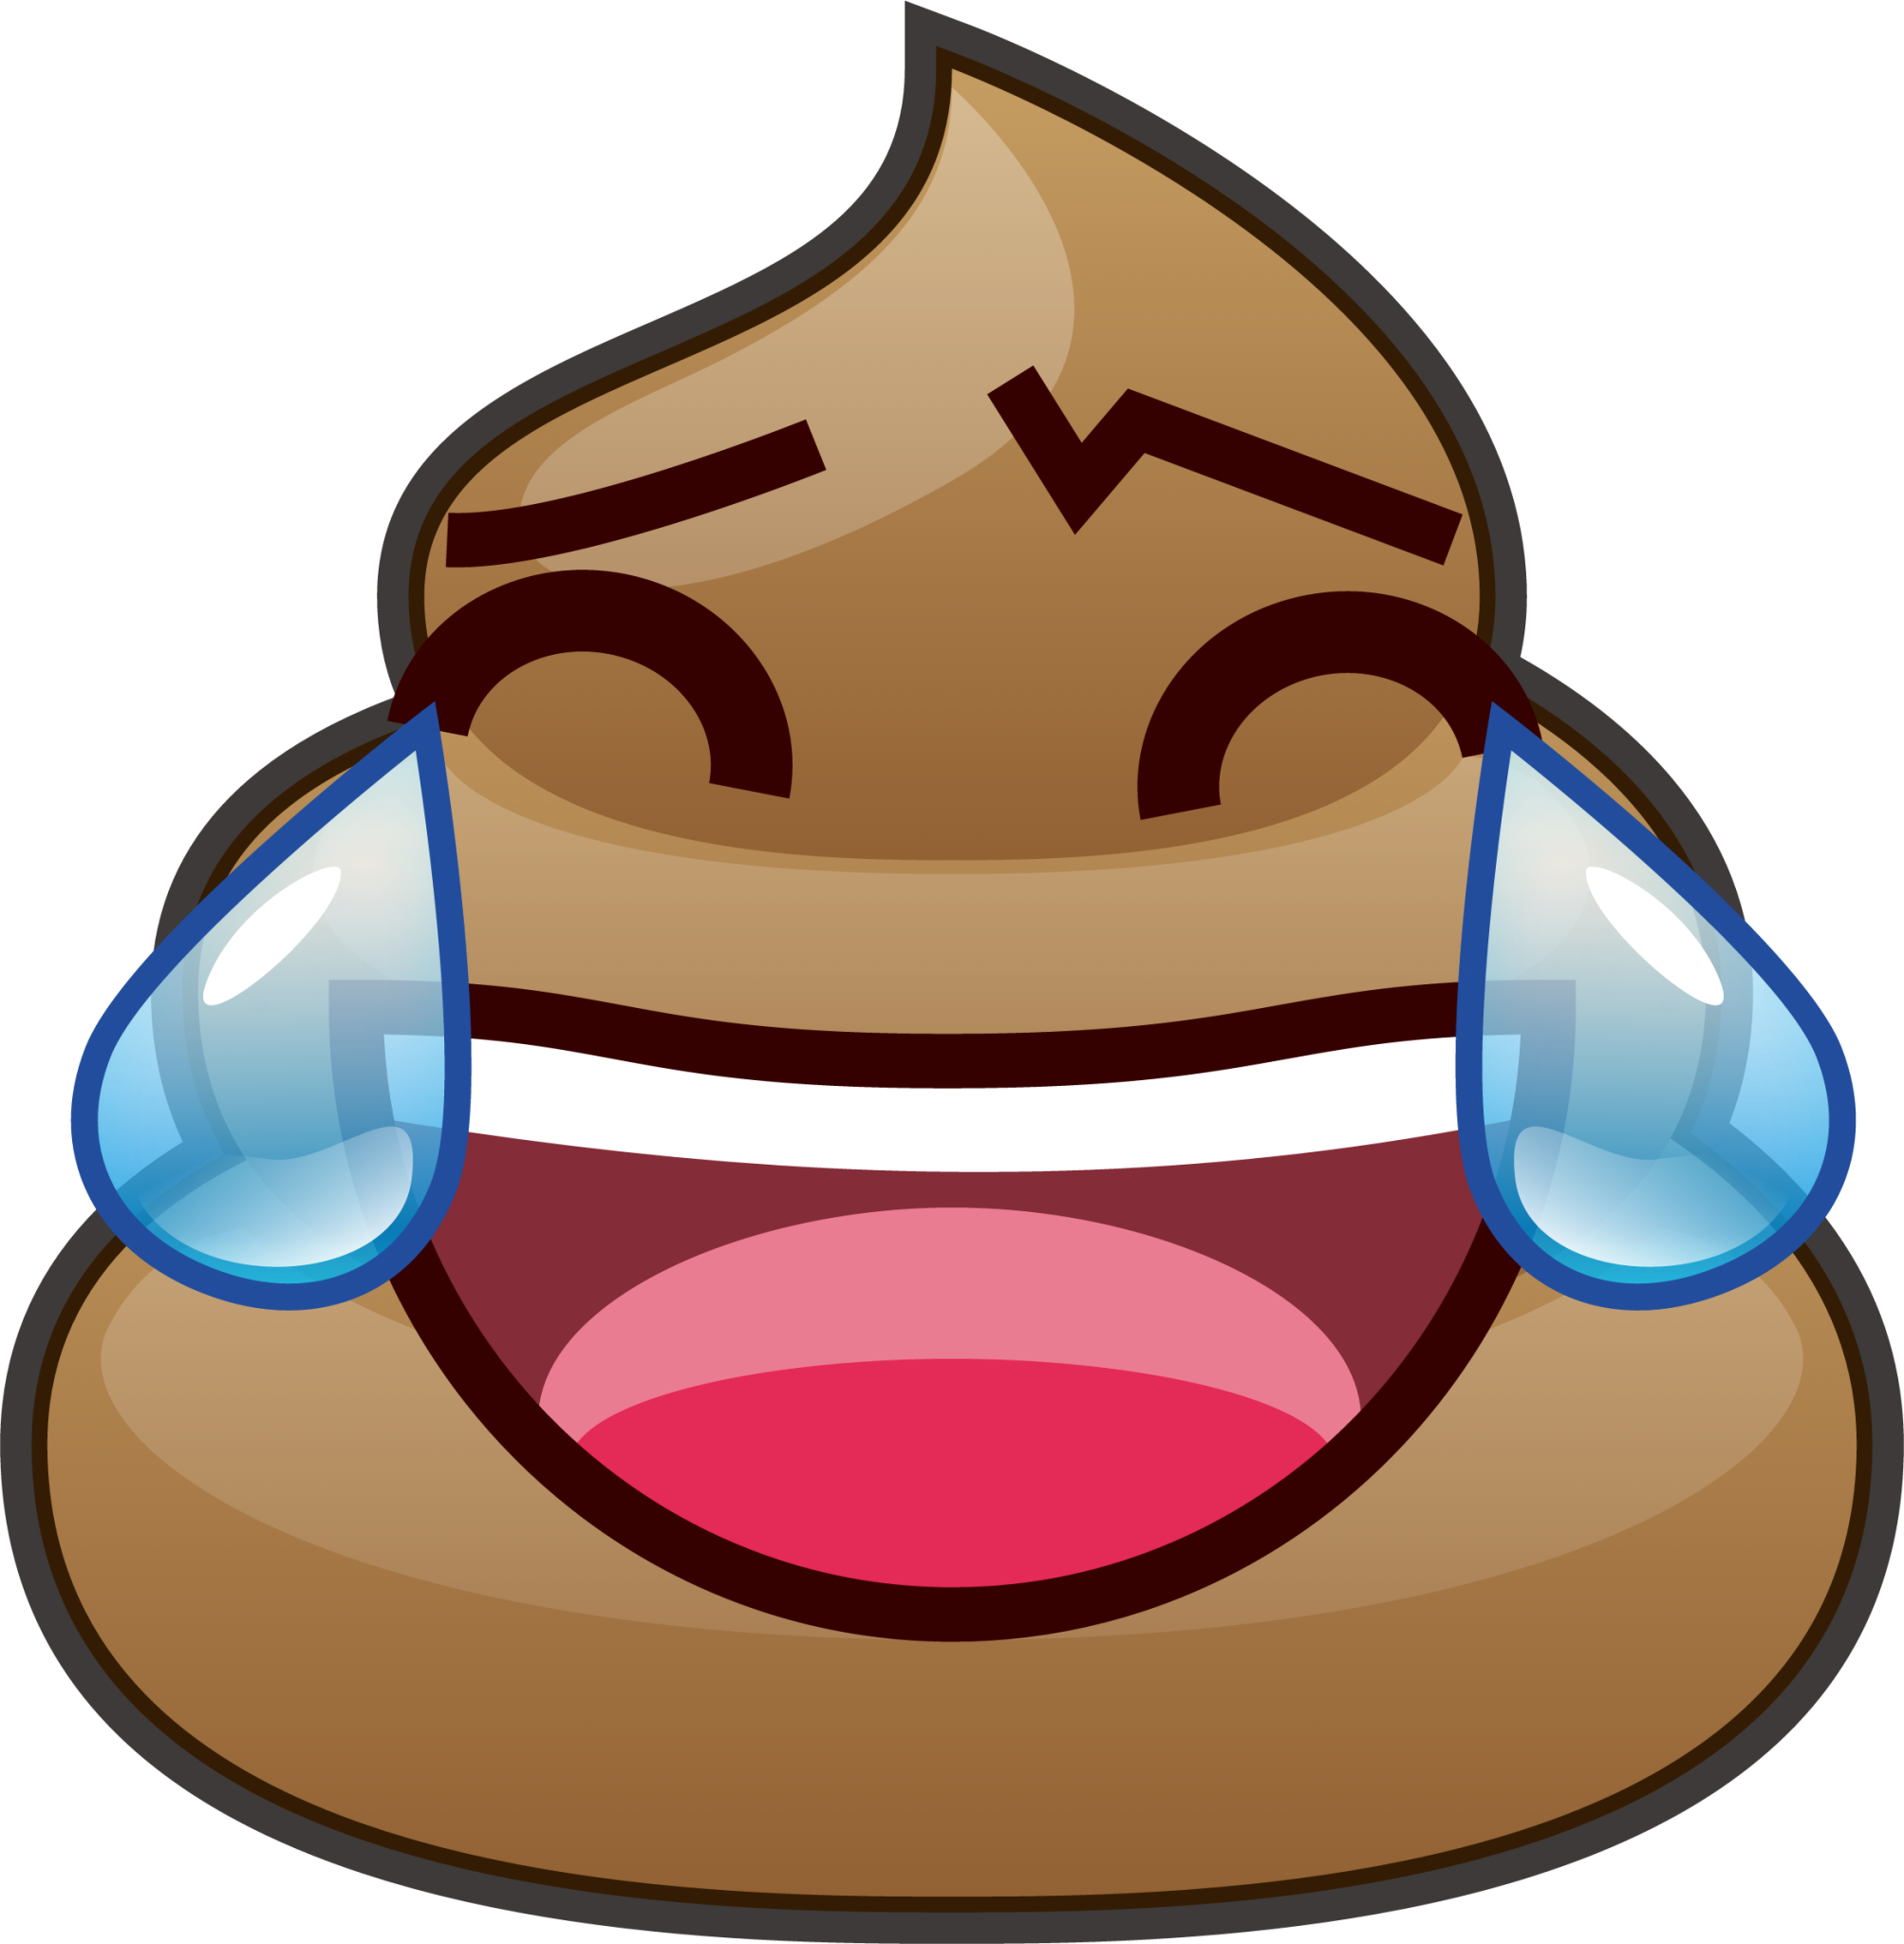 joy (poop) emoji